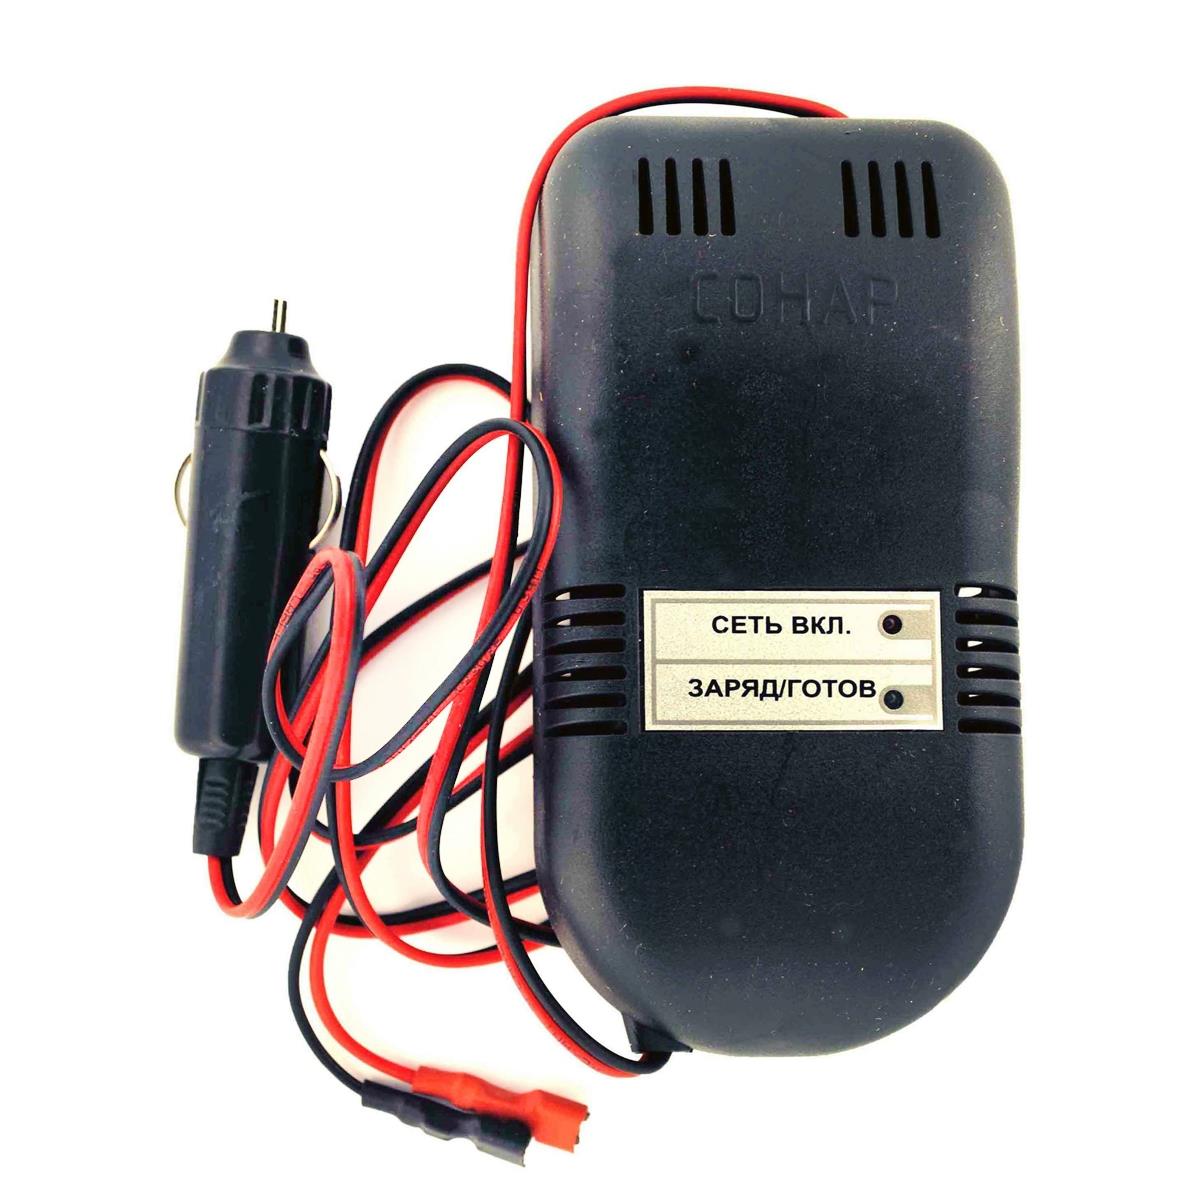 Зарядное устройство COHAP DC/DC 12 V (205.05) зарядное устройство для аккумуляторных батарей pxc einhell